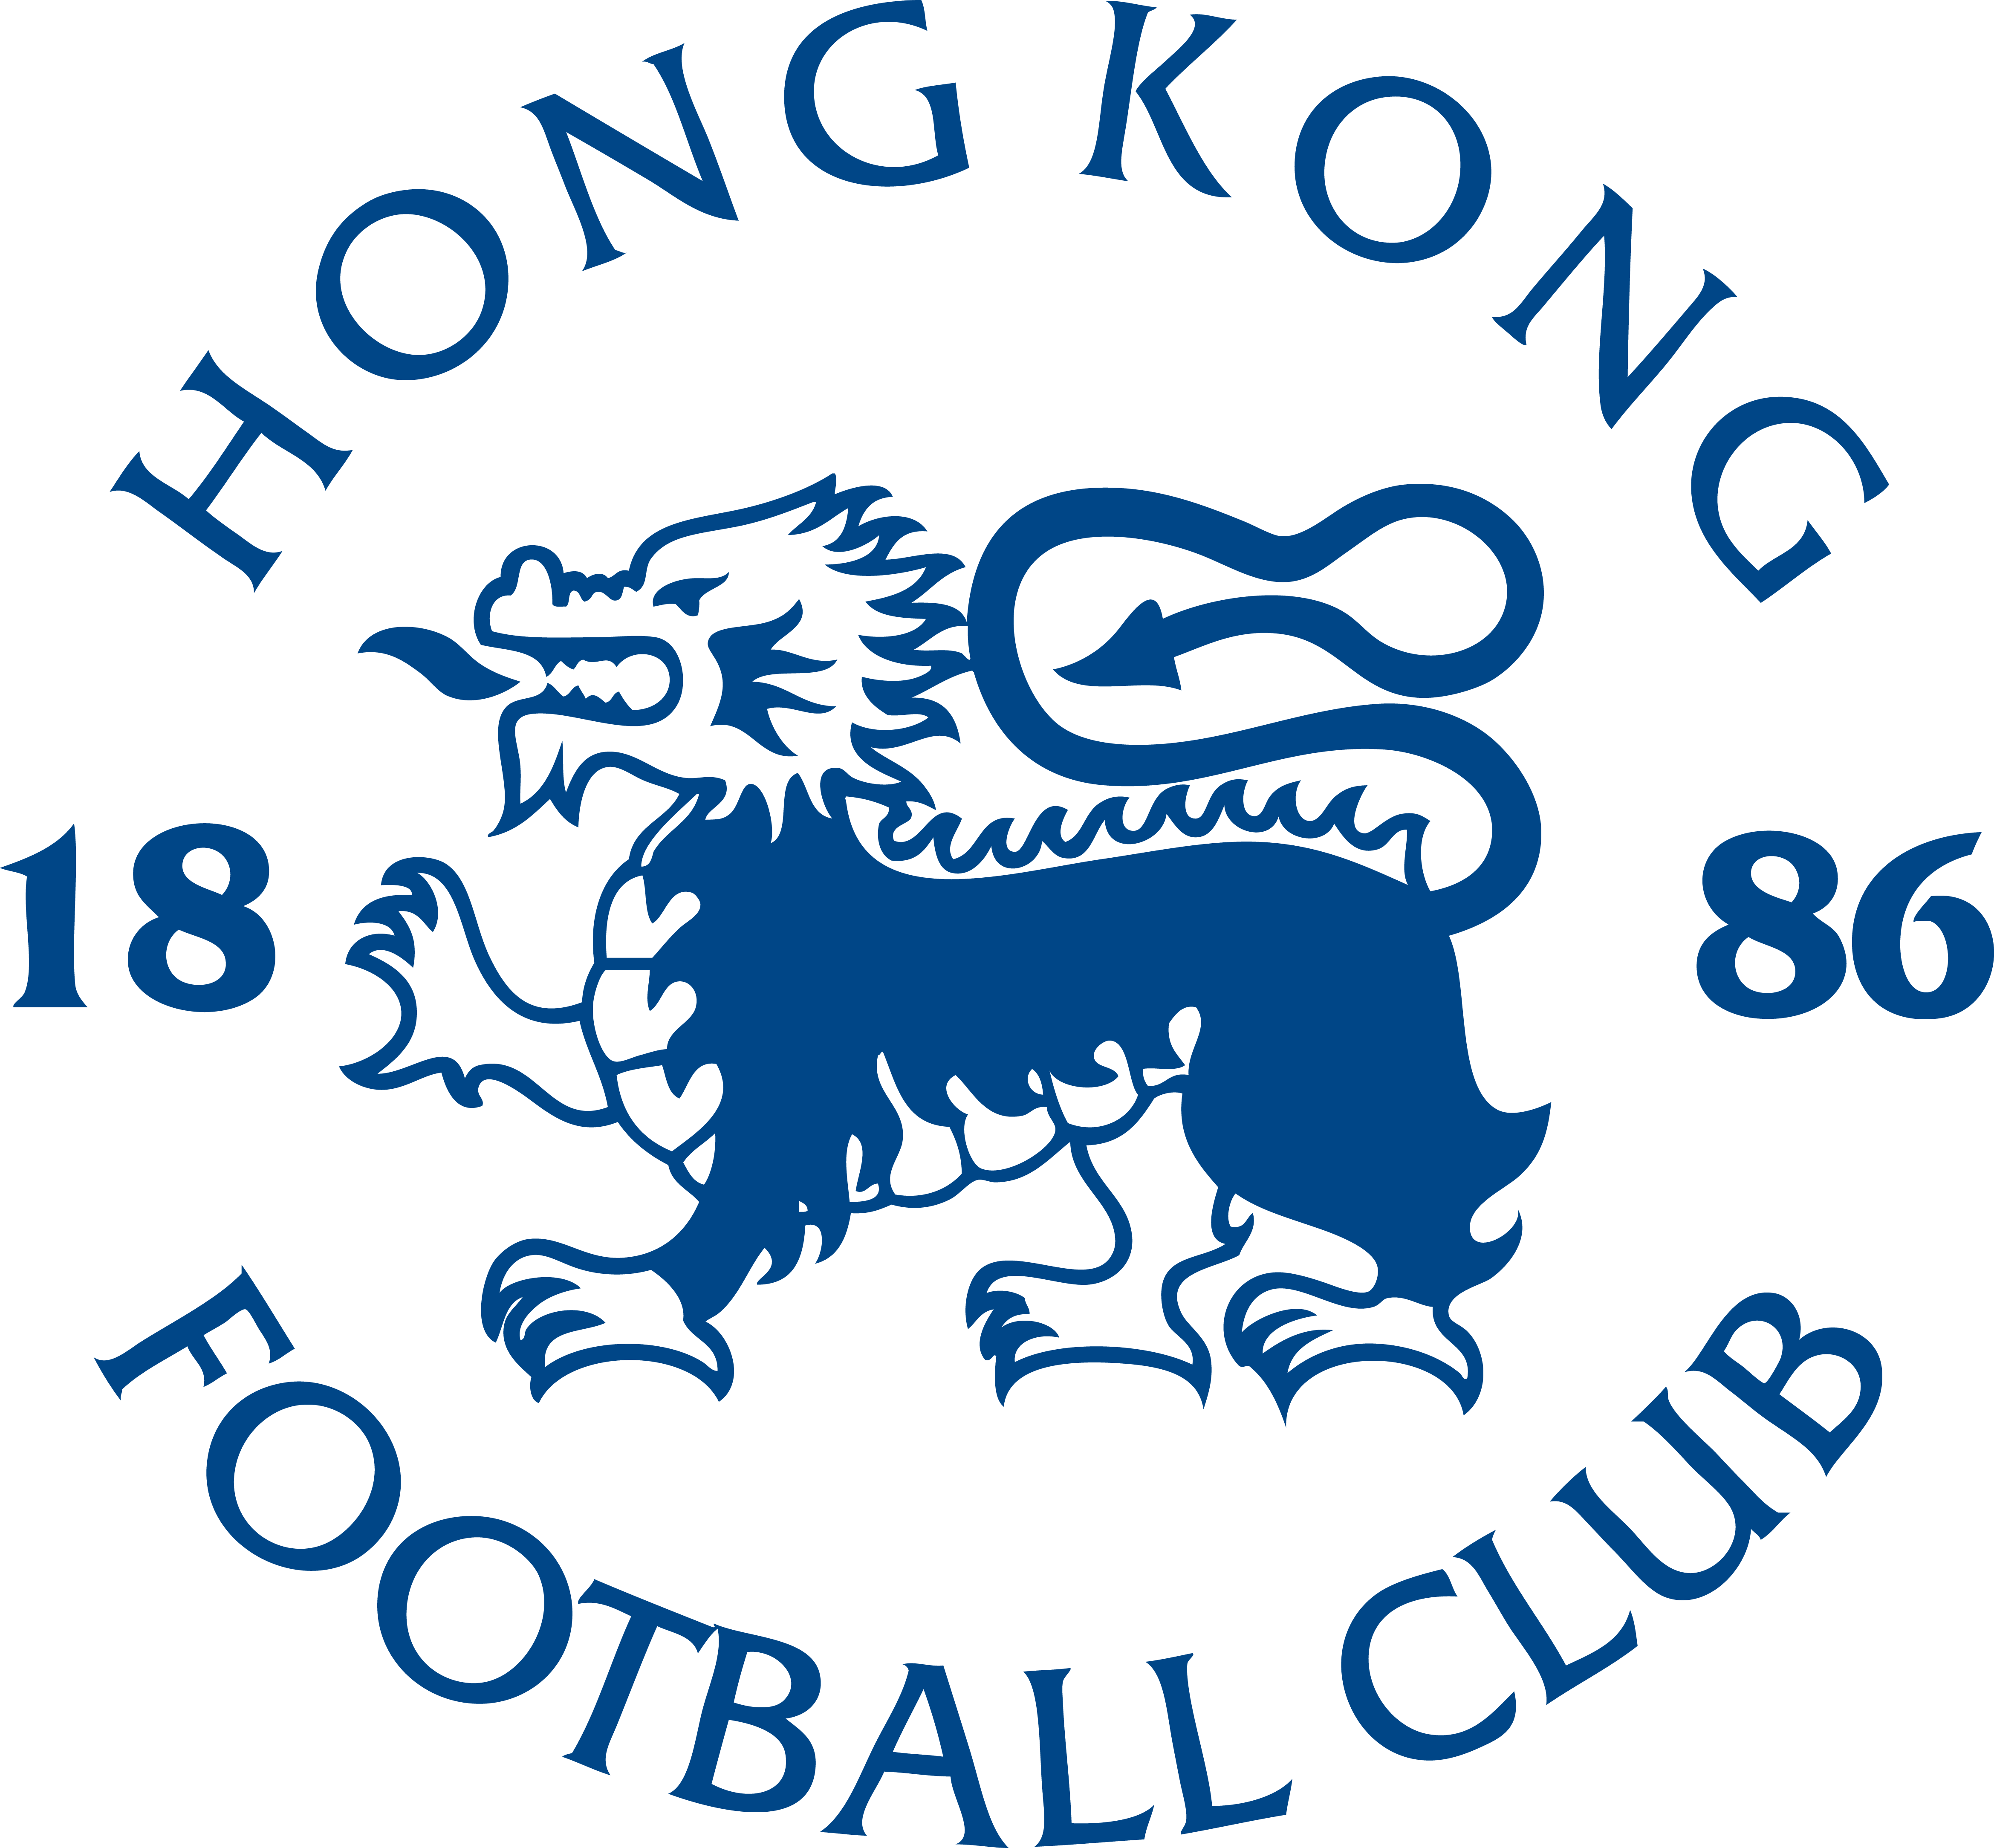 香港足球俱樂部(港會)